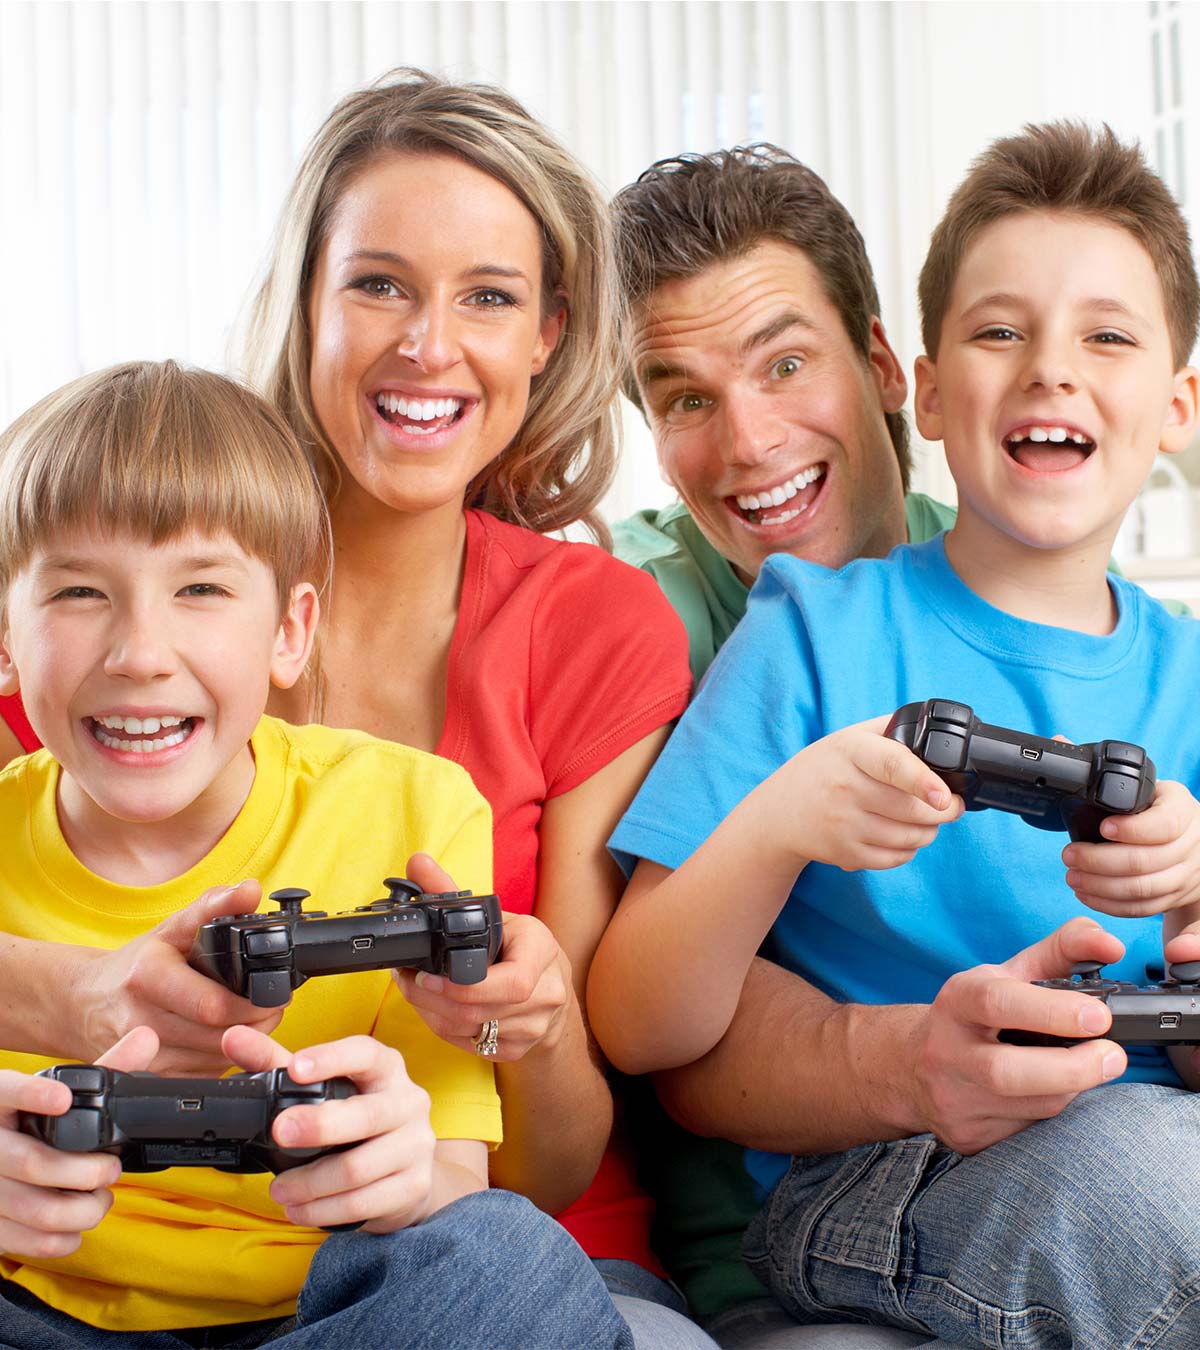 Wrok Eervol moeilijk 23 Best PS3 Games For Kids And Family In 2023 - MomJunction